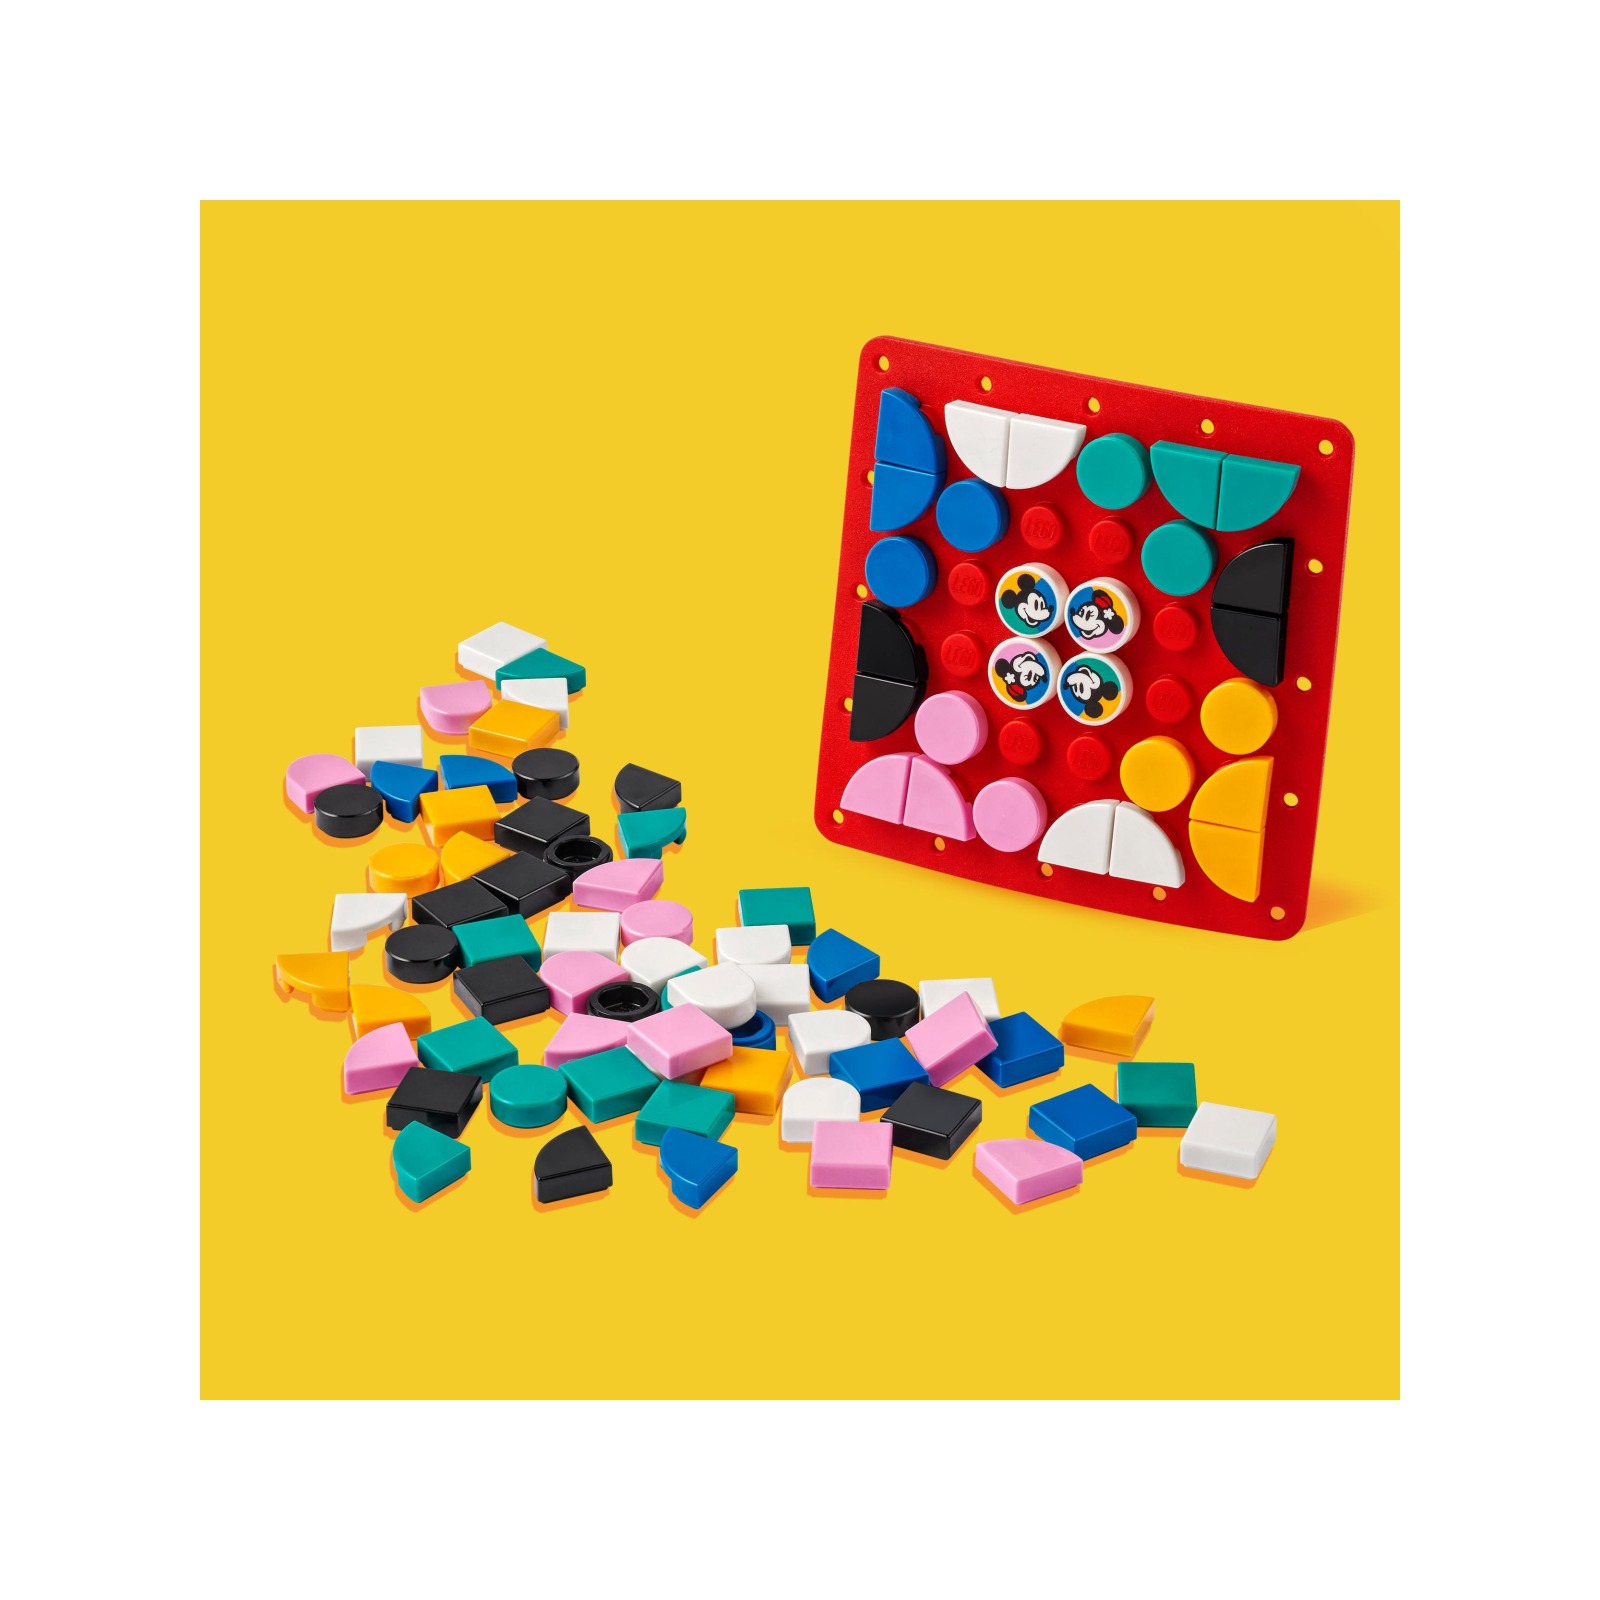 Lego dots 41963 disney patch stitch-on topolino e minnie, kit fai da te, toppa da cucire per decorare vestiti o accessori - DOTS, Disney Stitch, Minnie